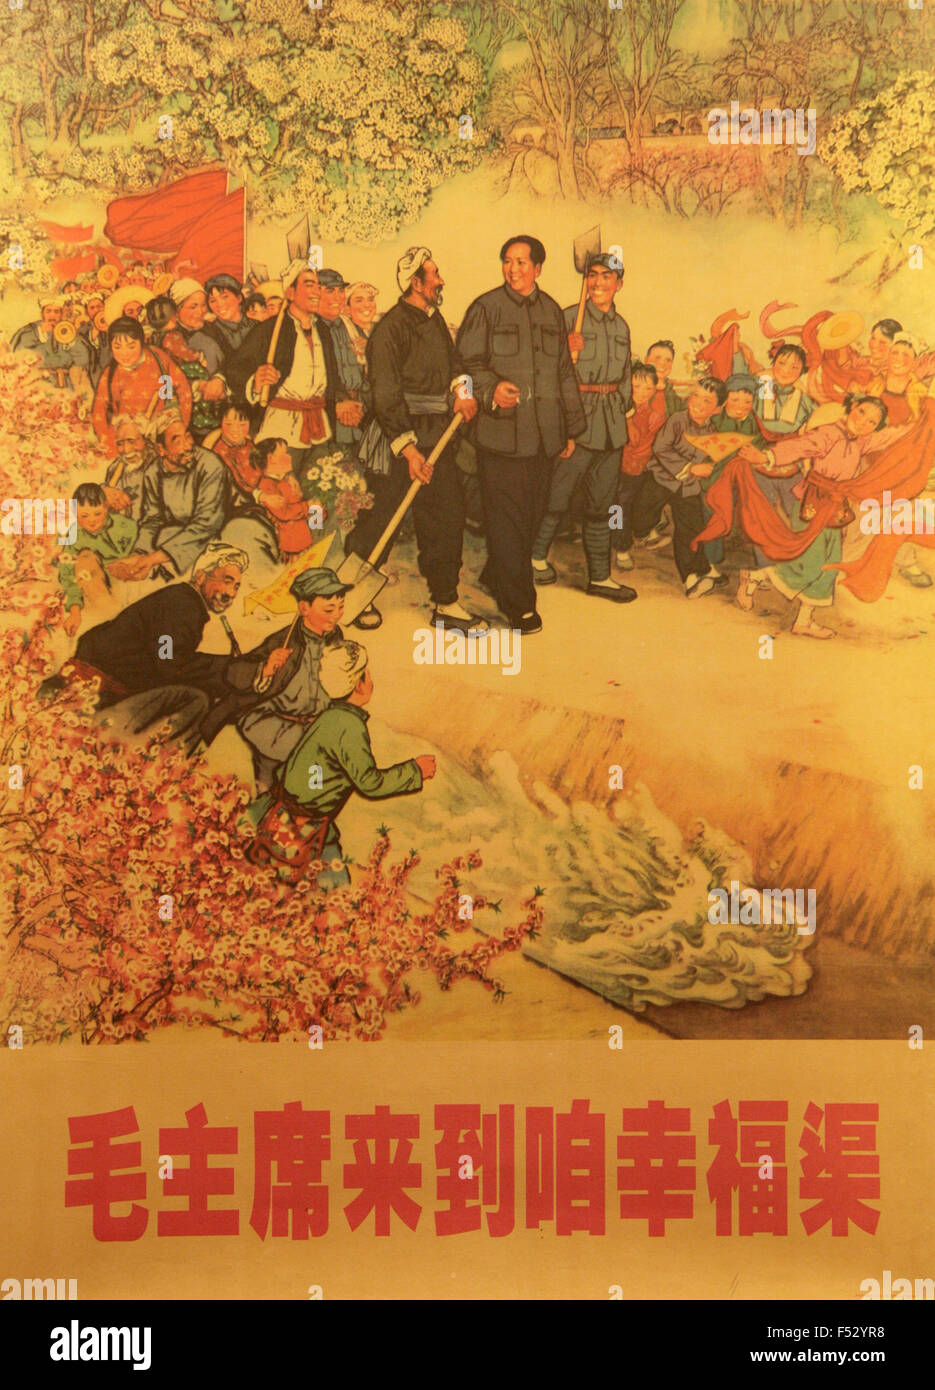 Mao Zedong dans une affiche de propagande de la révolution culturelle chinoise Banque D'Images